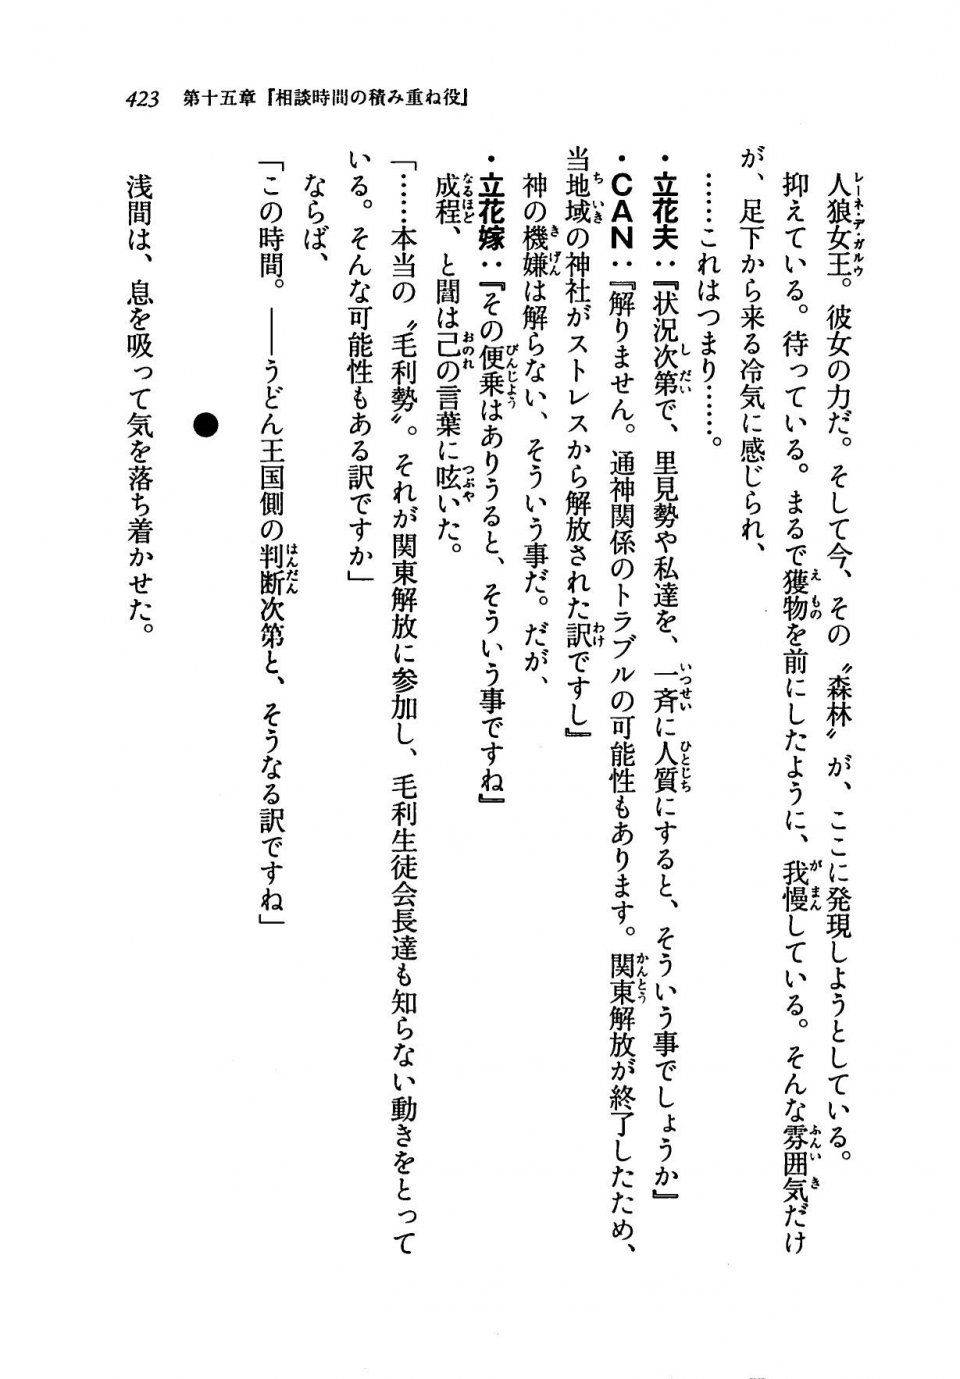 Kyoukai Senjou no Horizon LN Vol 19(8A) - Photo #423